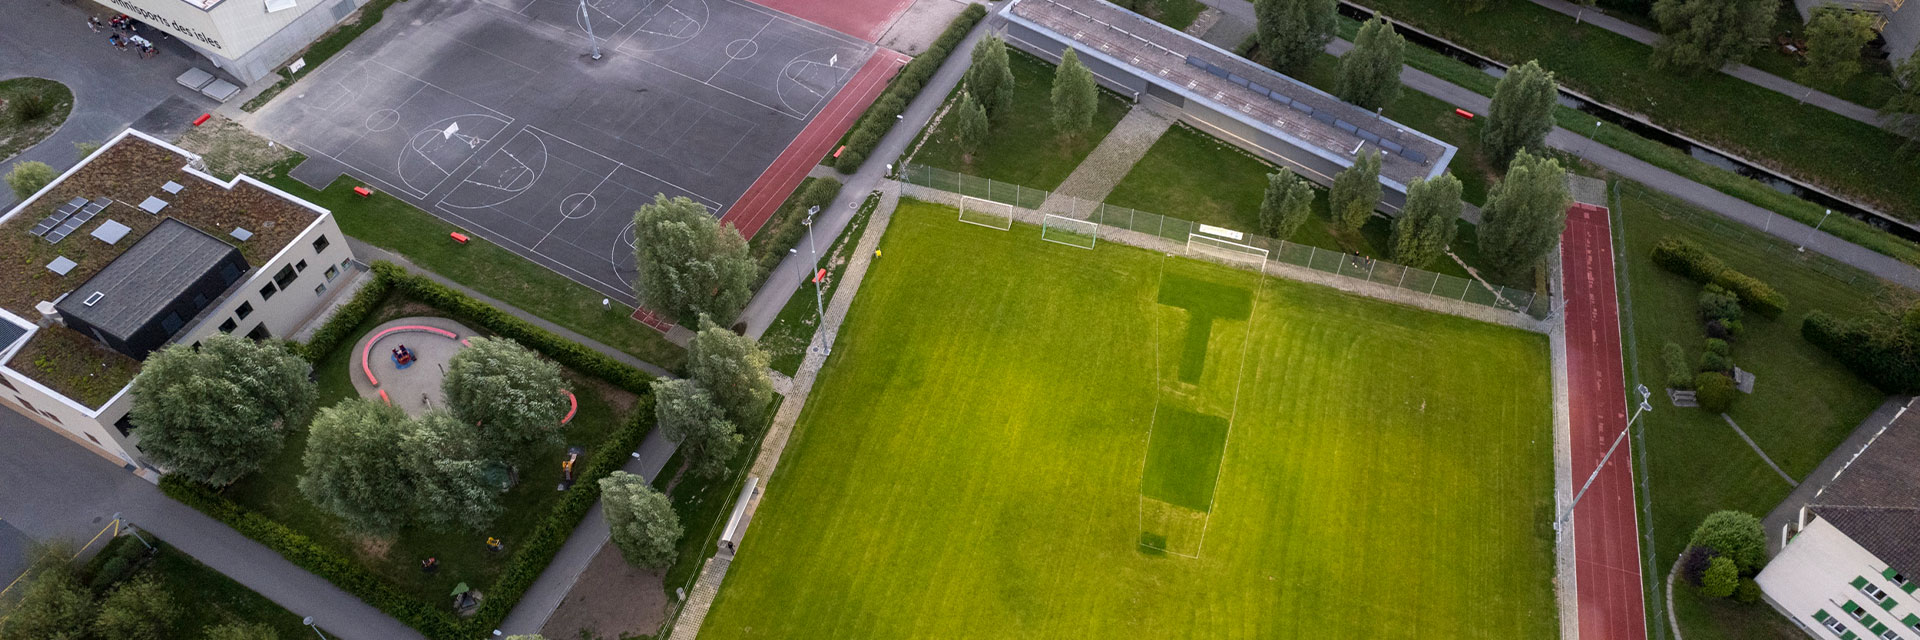 titelbild-fussballplatz-yverdon-3.jpg